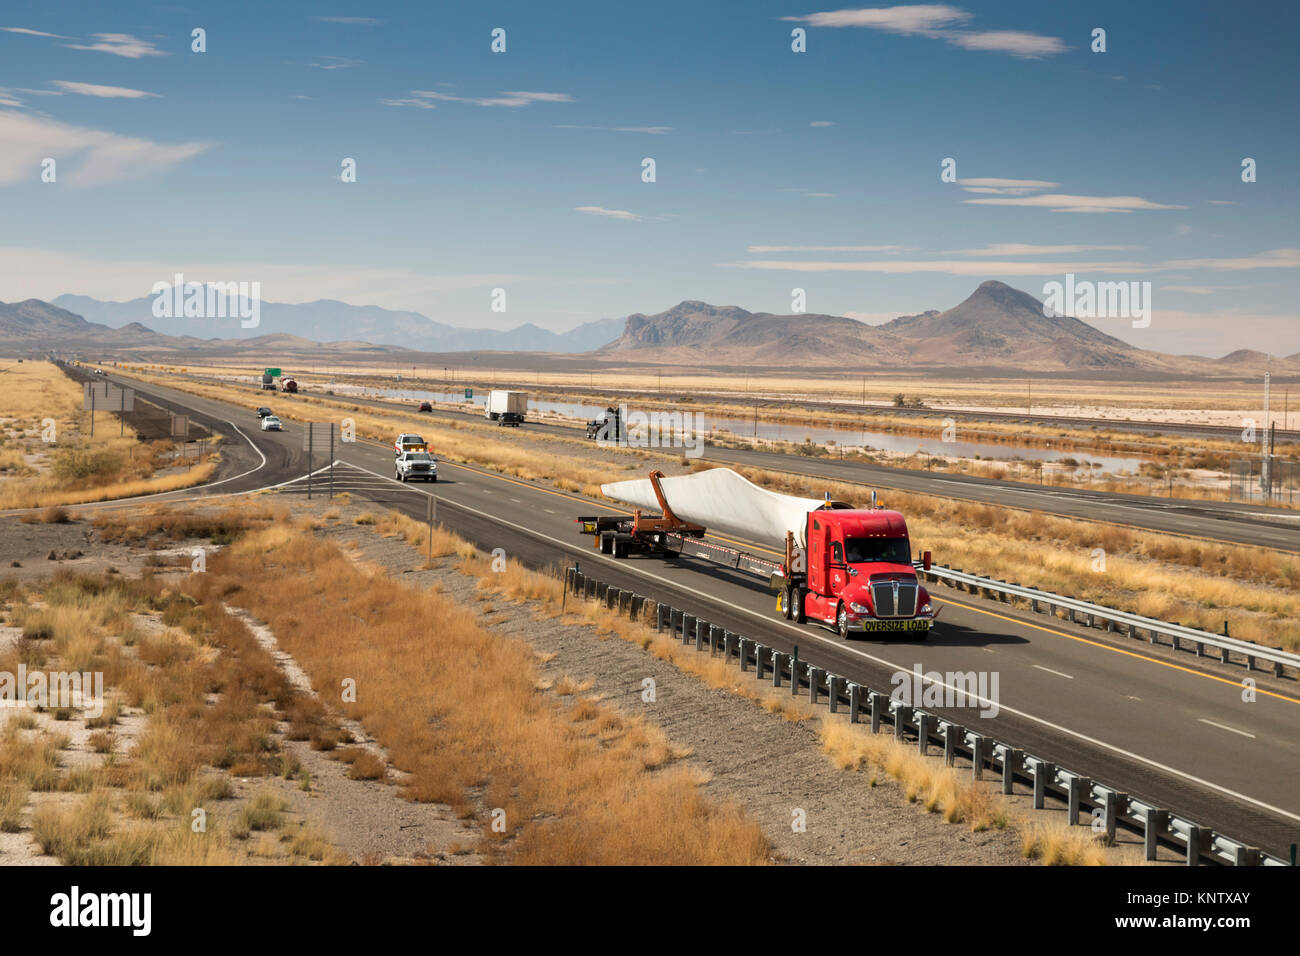 Lordsburg, Nouveau Mexique - un camion transportant une lame pour une éolienne sur l'Interstate 10. Banque D'Images